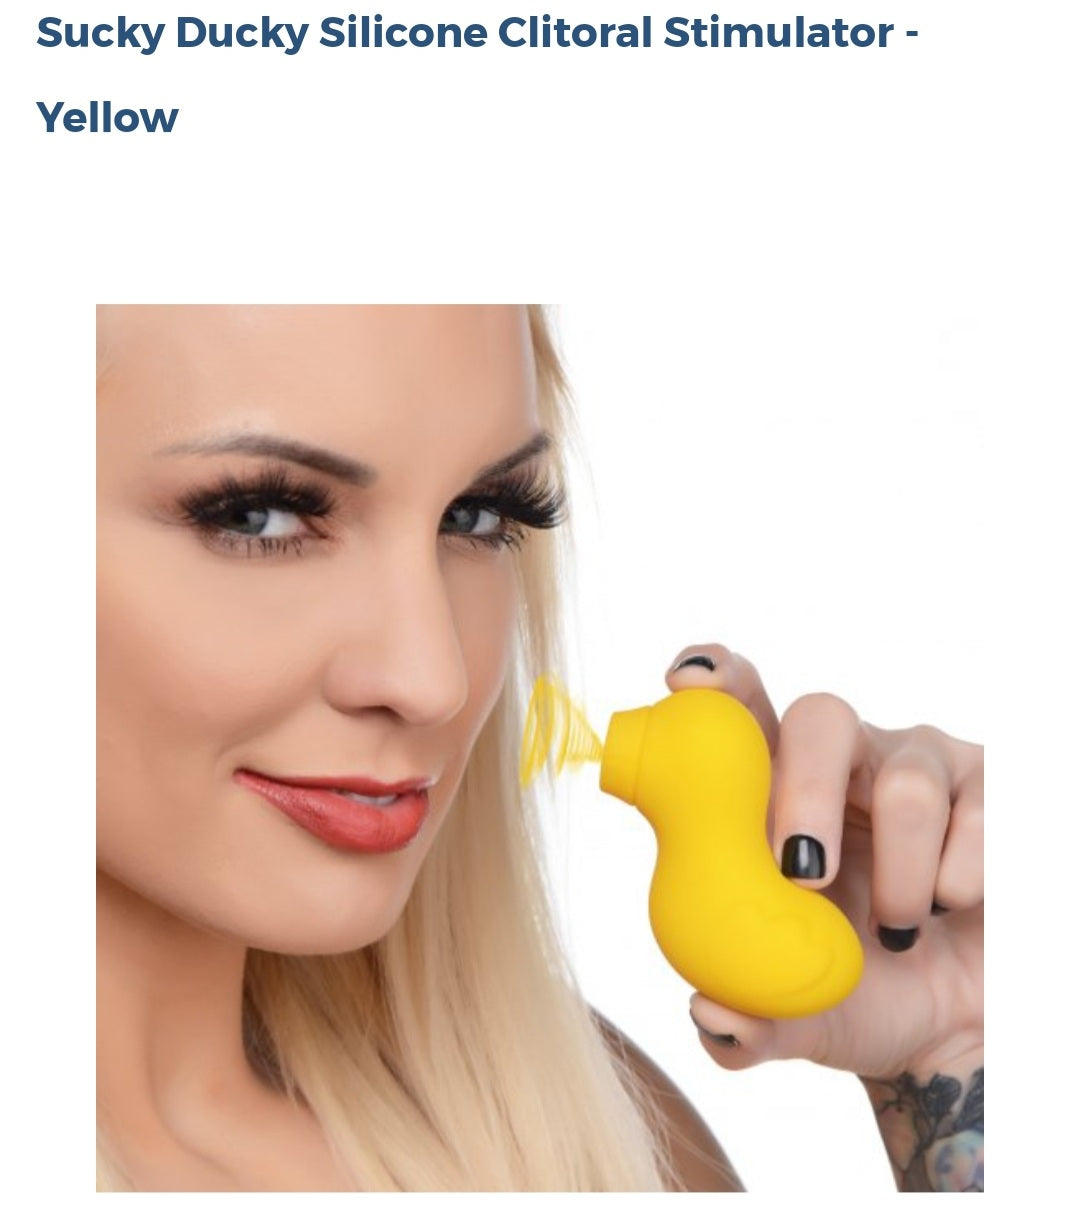 Sucky Ducky Silicone Clitoral Stimulator-Yellow